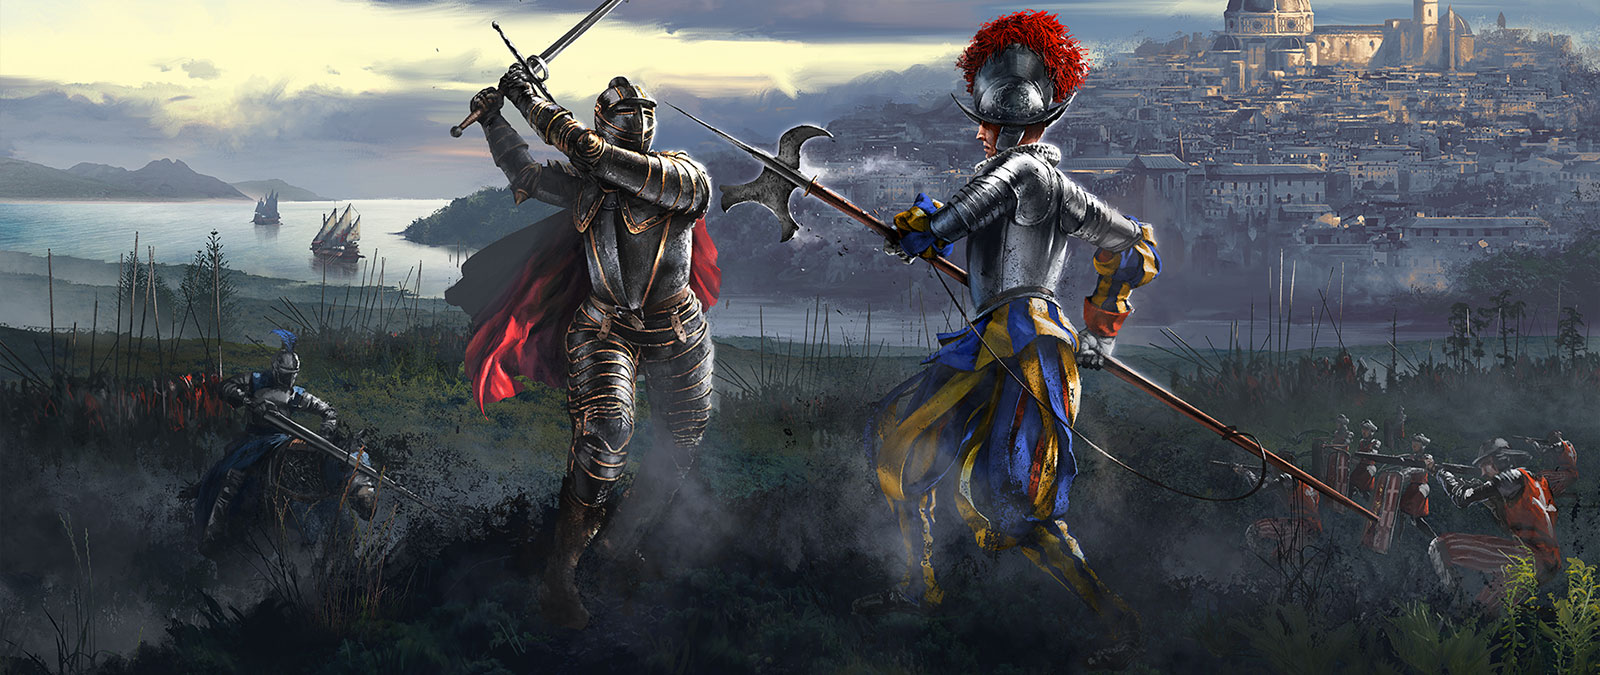 Twee ridders strijden terwijl hun legers zich opmaken om te vechten.